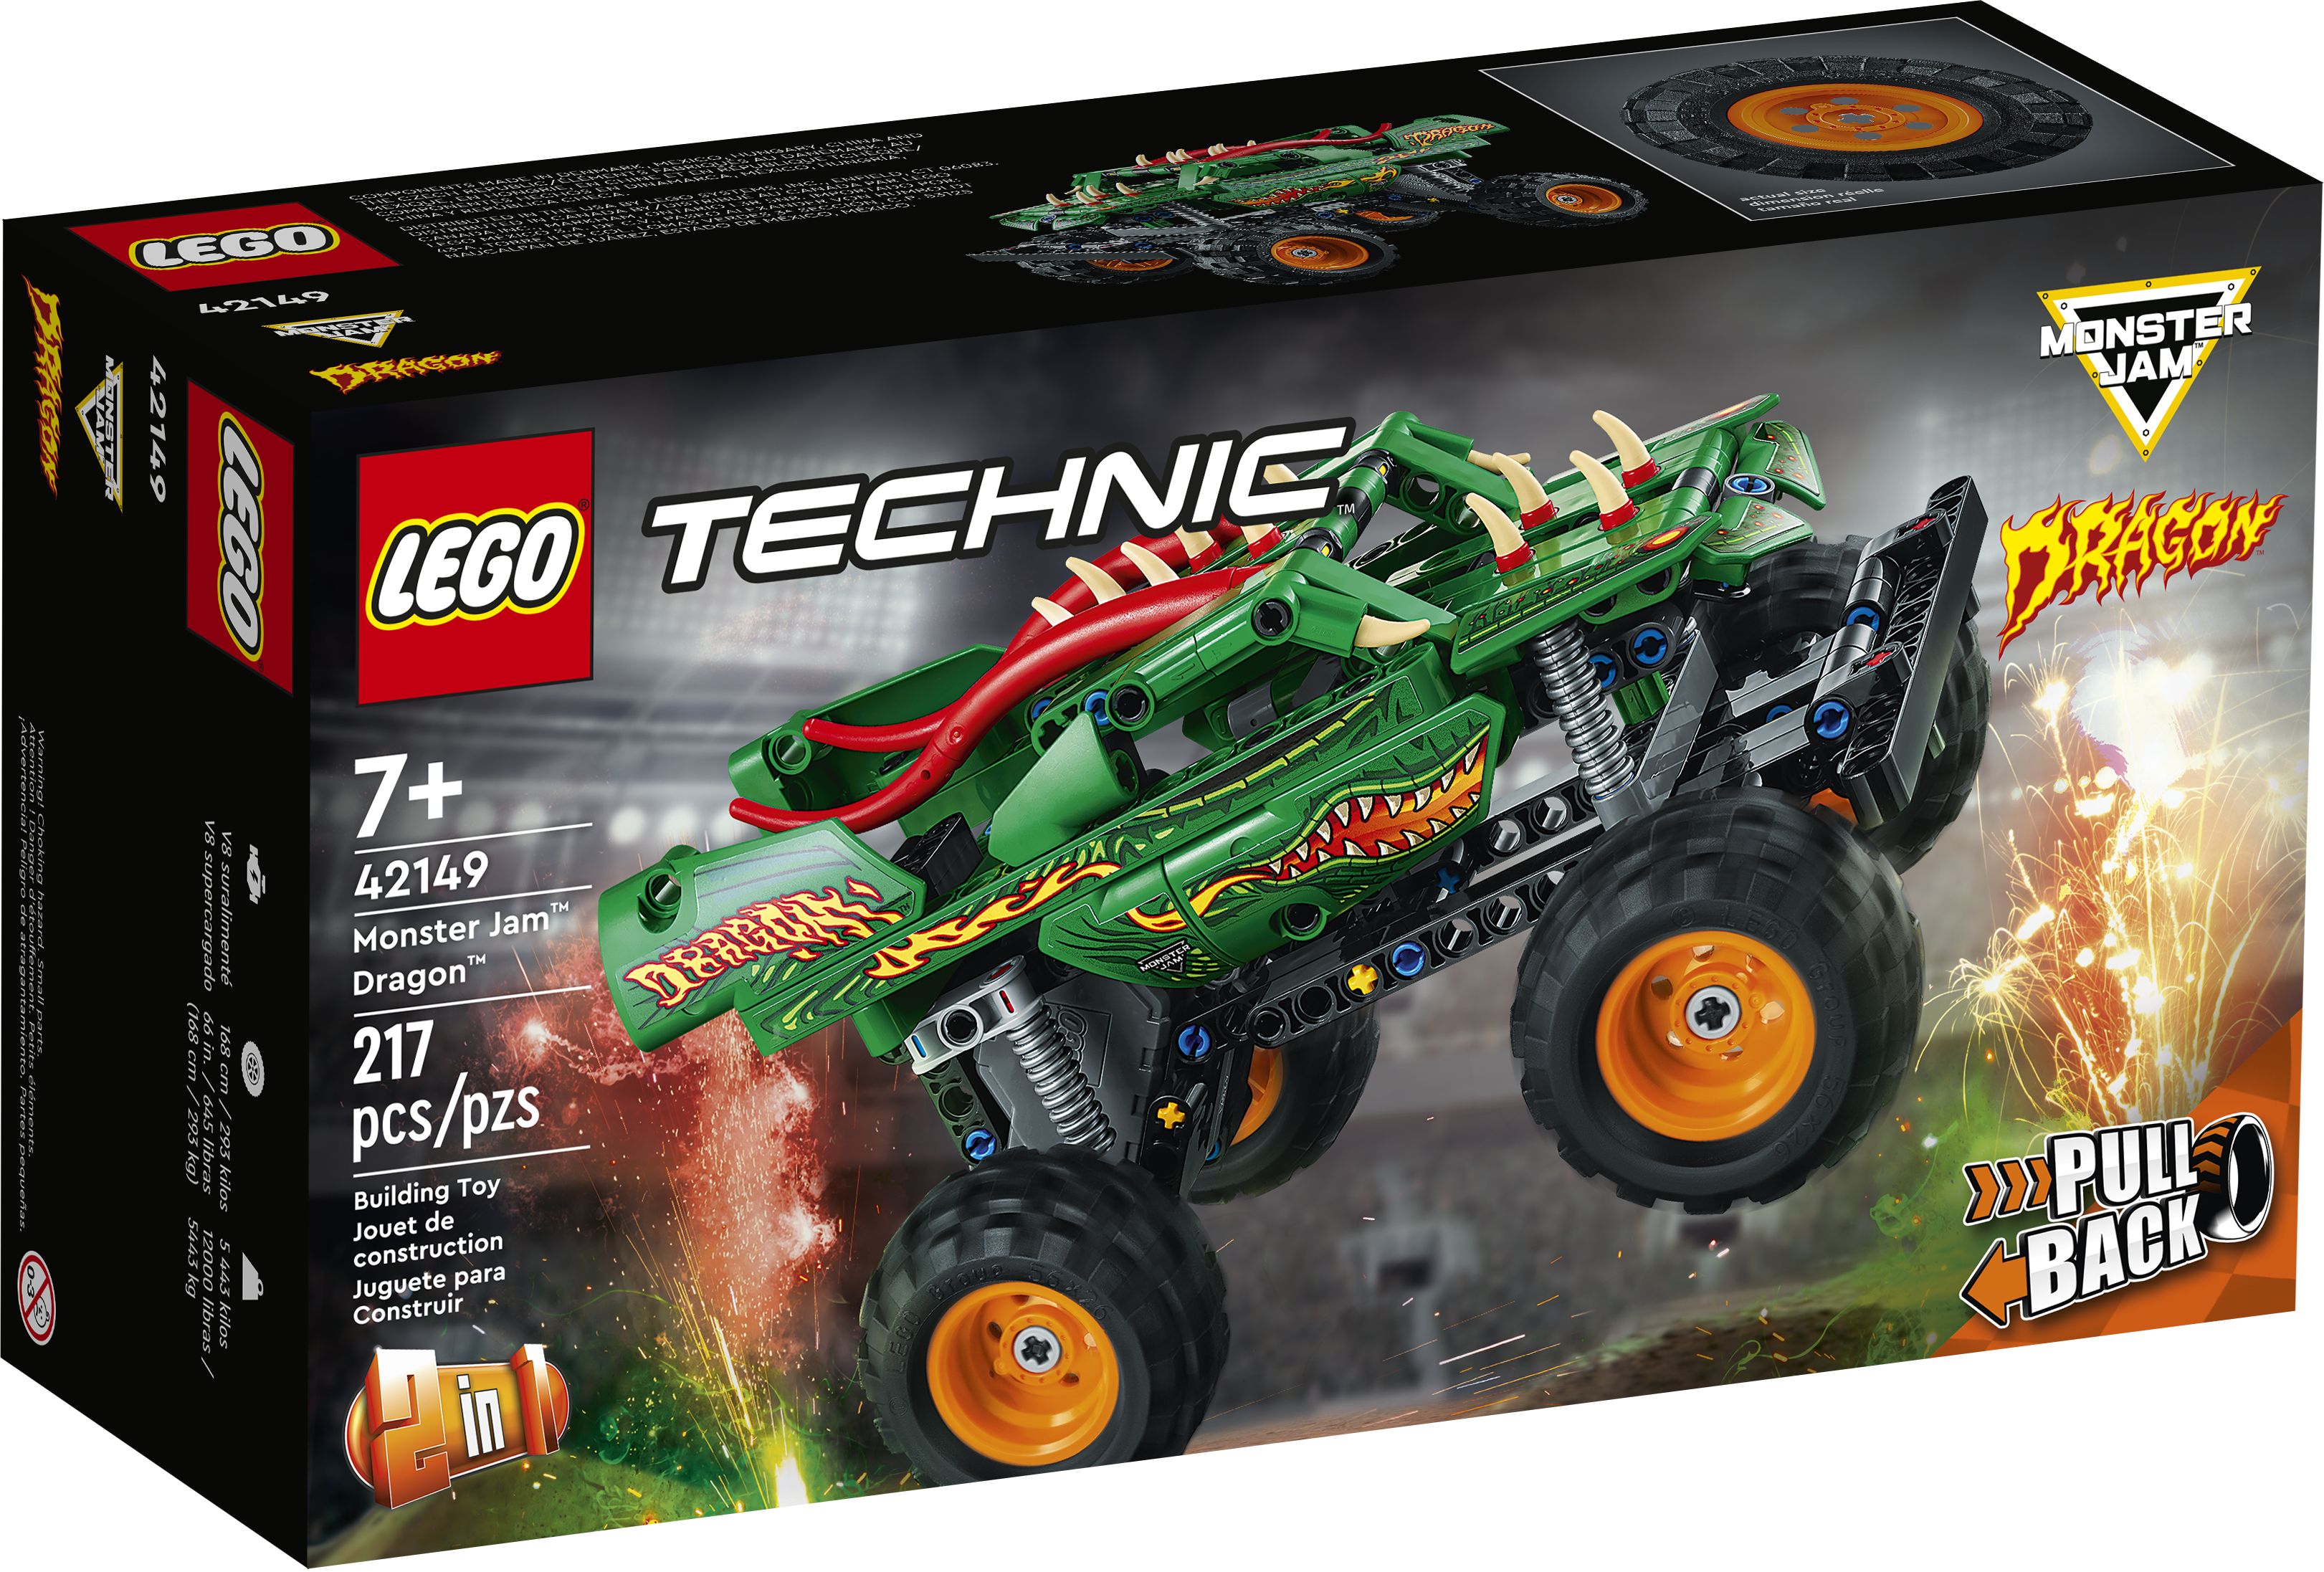 LEGO Technic 42149 Monster Jam™ Dragon™ LEGO_42149_Box1_v39.jpg